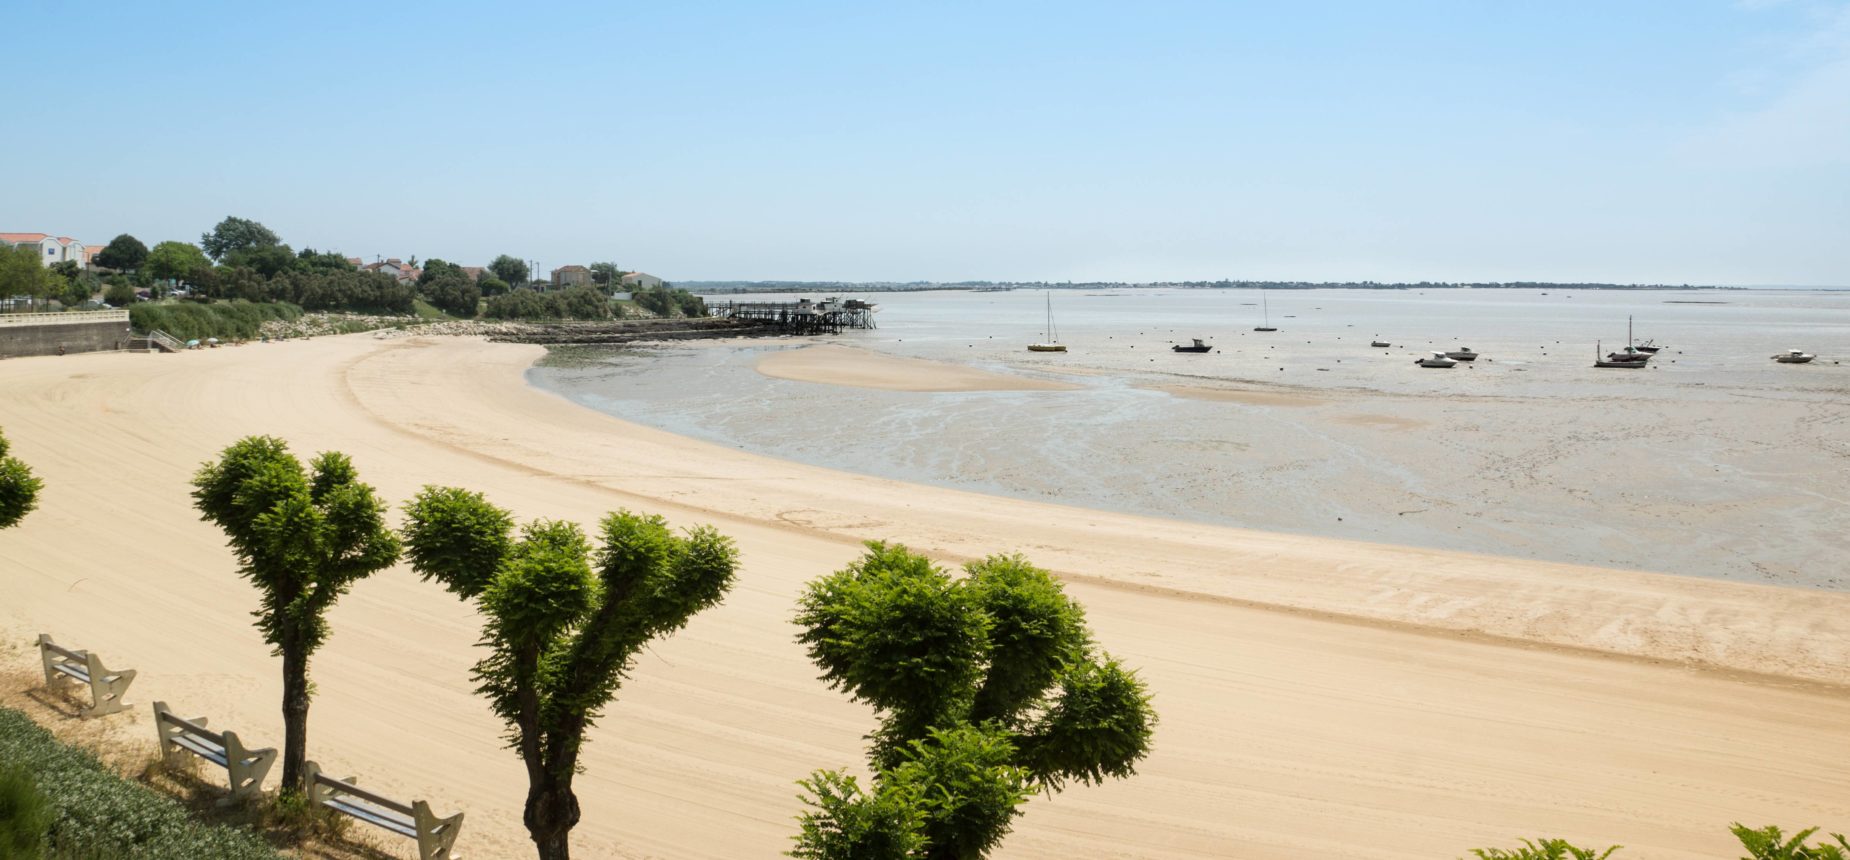 Plage de sable fin à Meschers-sur-Gironde